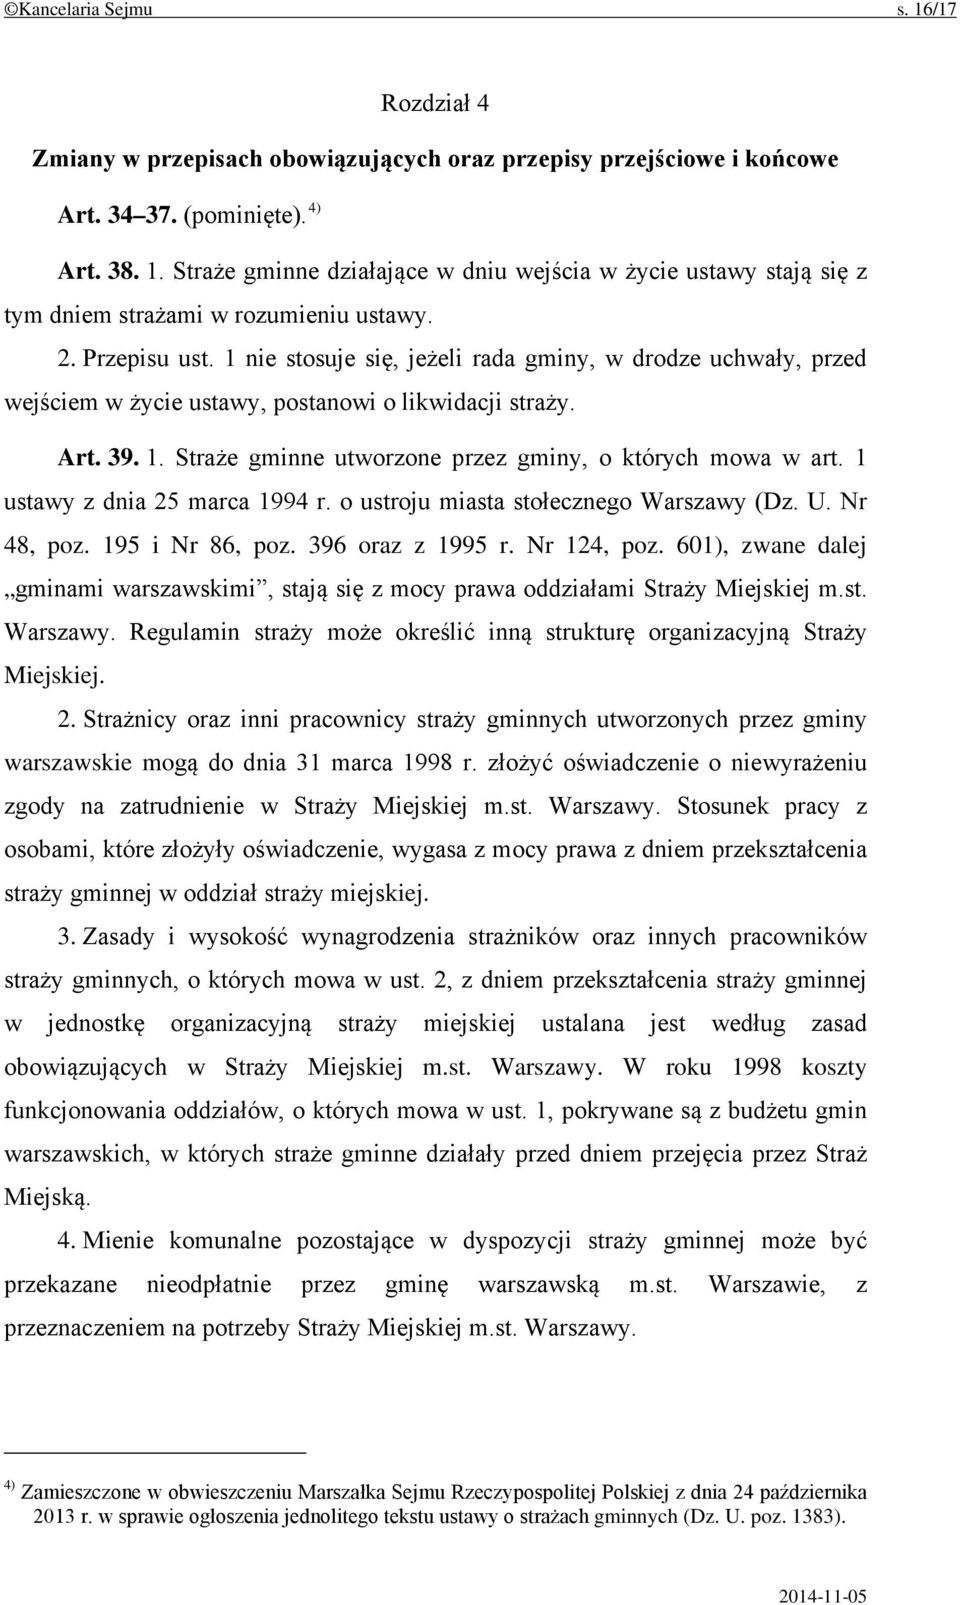 1 ustawy z dnia 25 marca 1994 r. o ustroju miasta stołecznego Warszawy (Dz. U. Nr 48, poz. 195 i Nr 86, poz. 396 oraz z 1995 r. Nr 124, poz.